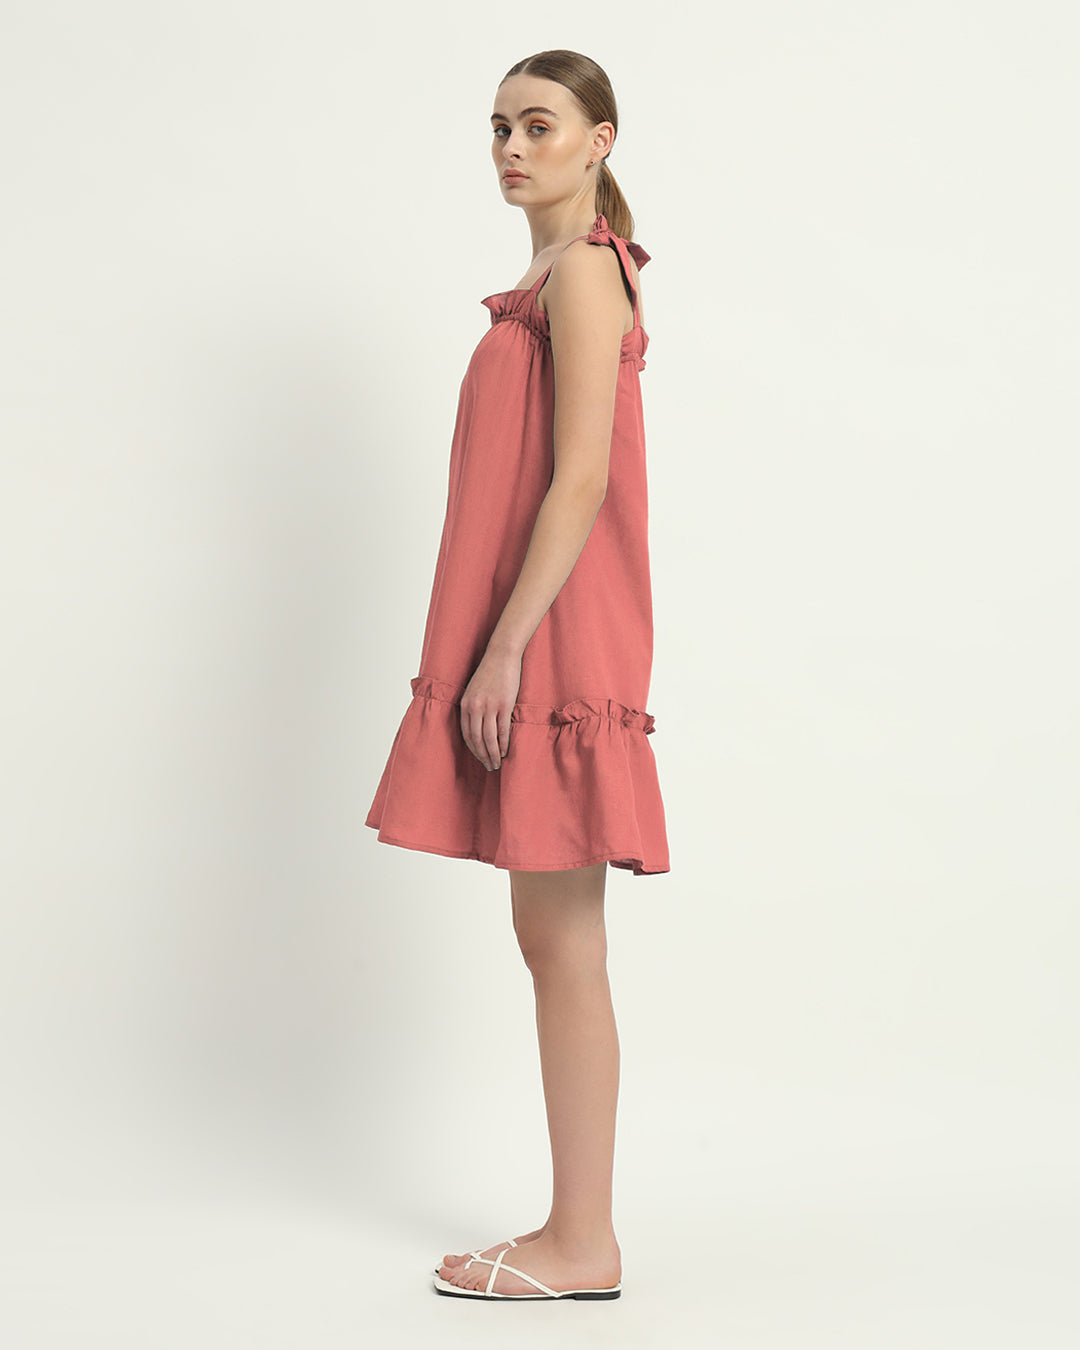 The Ivory Pink Amalfi Cotton Dress